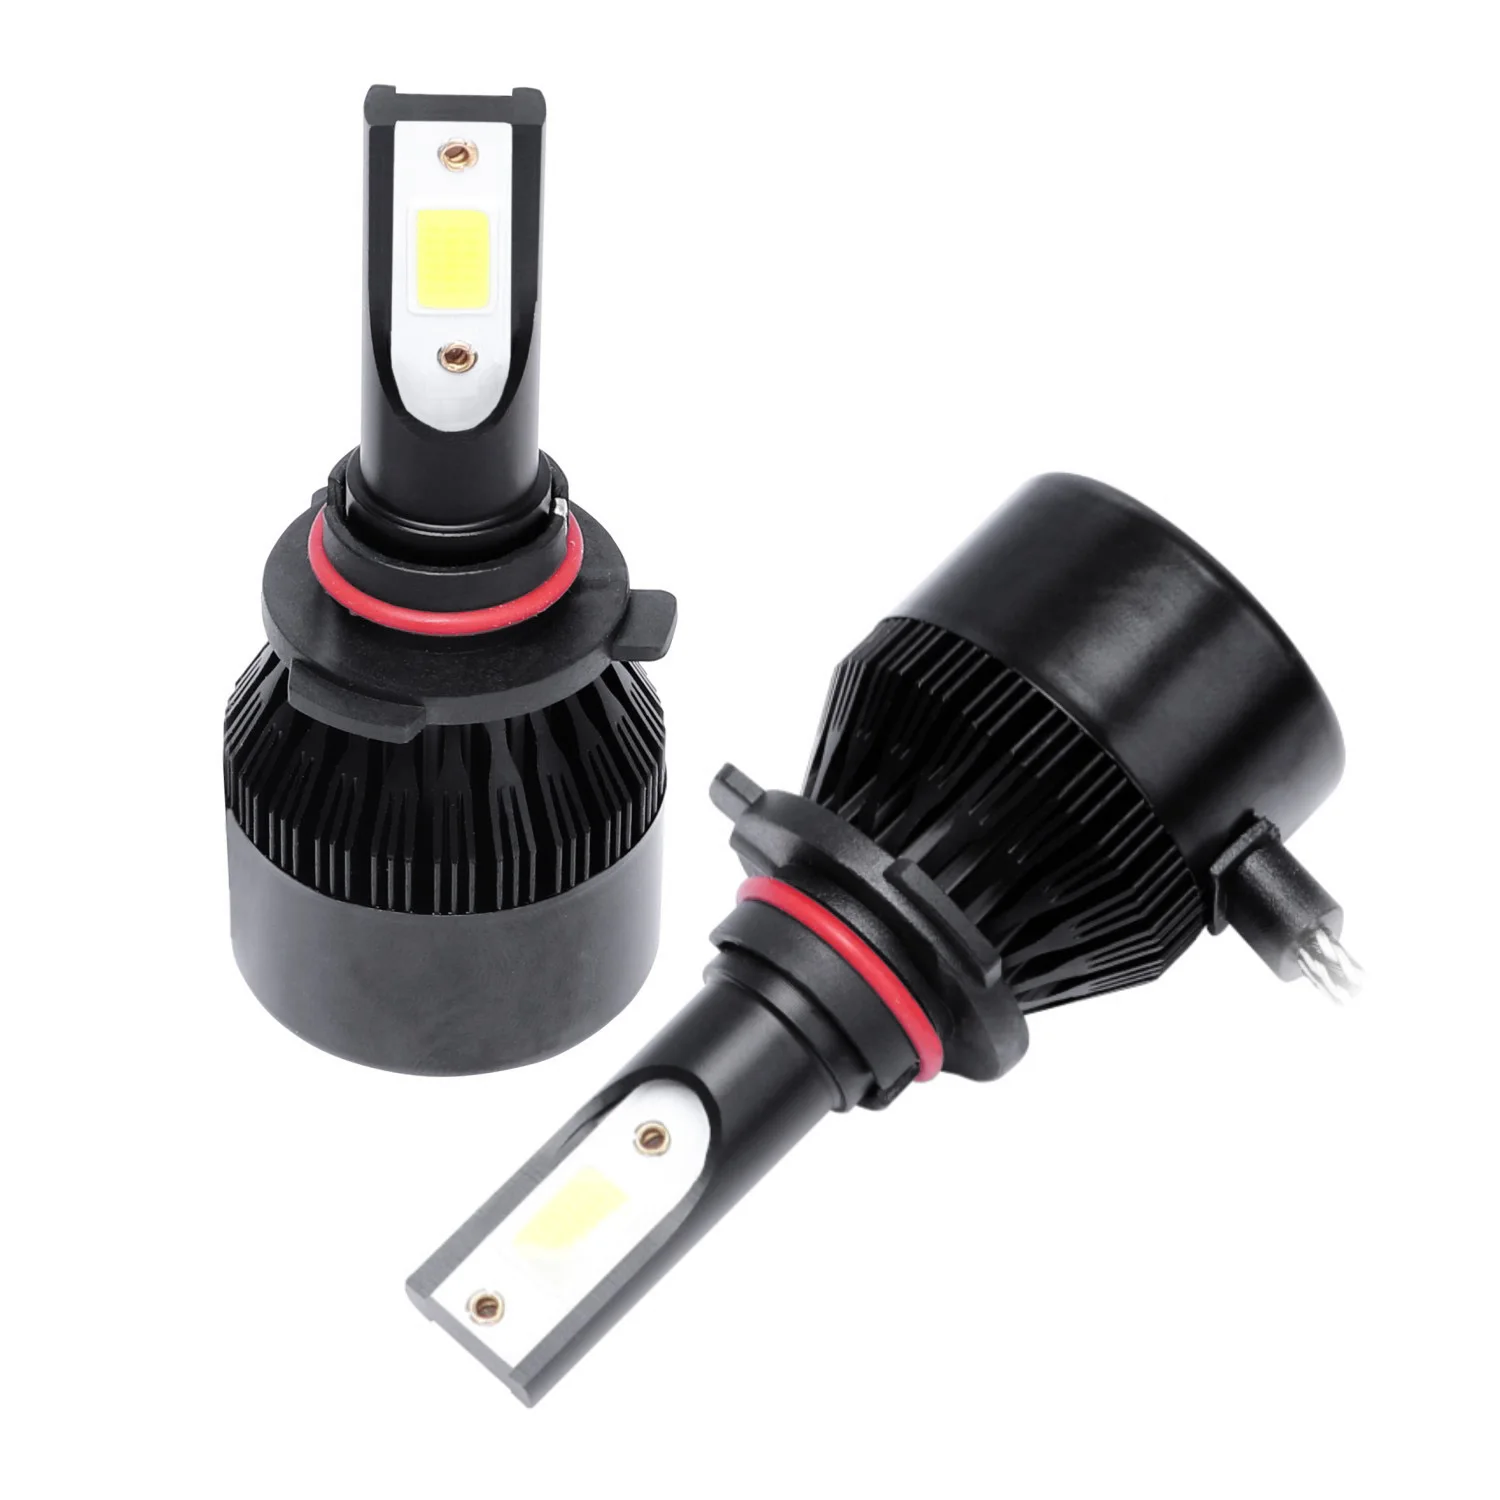 

C6 лампа для автомобильных фар Светодиодная лампа 9005/Hb3 Светодиодные лампы для фар, 2 шт. 6500K холодный белый светодиод для фар головного света, противотуманные лампы для замены Cob